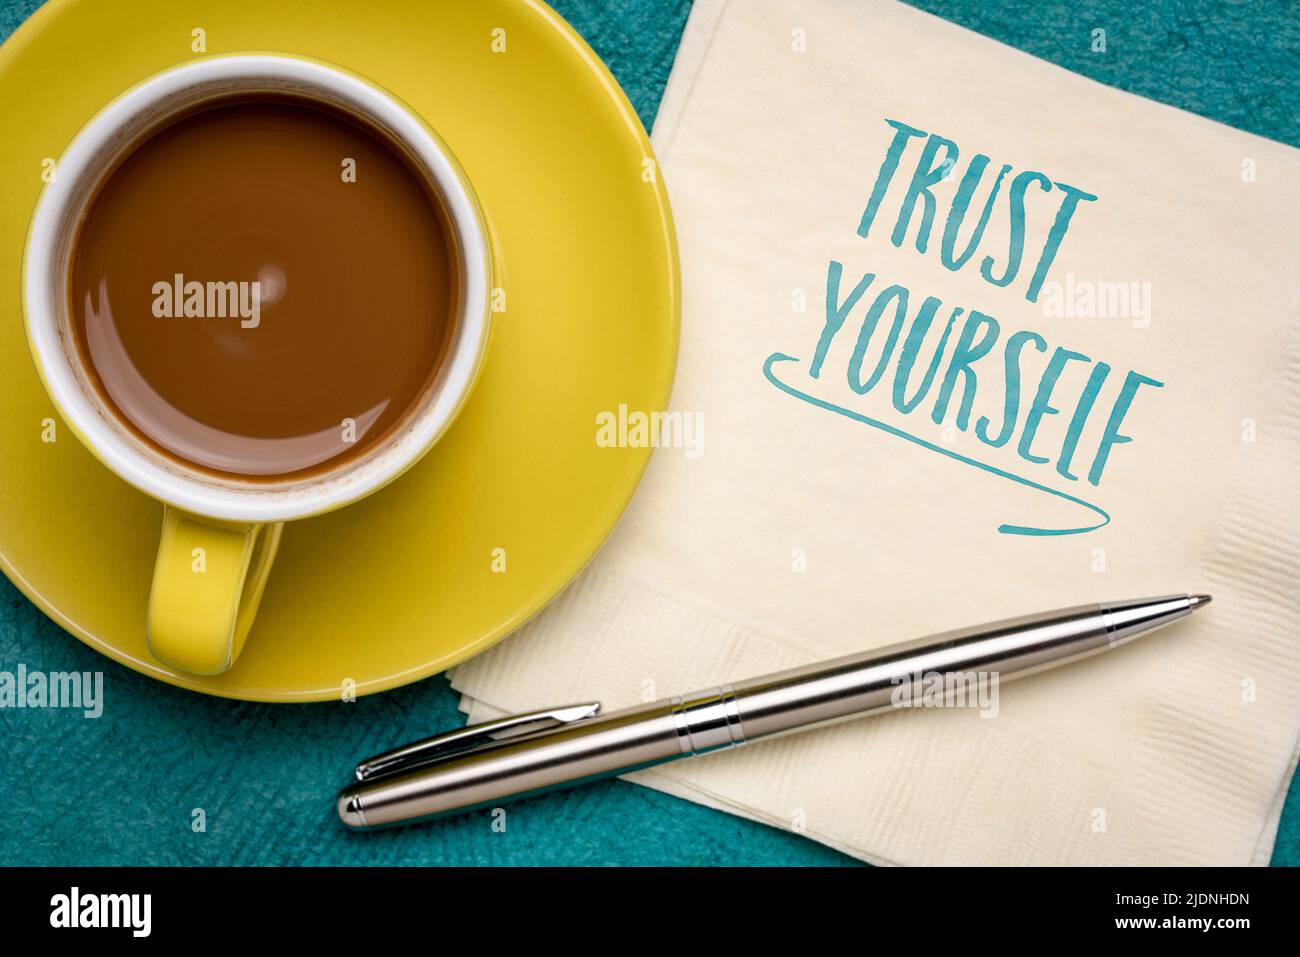 nota di promemoria di fiducia - scrittura a mano su un tovagliolo con caffè, mentalità, fiducia in se stessi e concetto di sviluppo personale Foto Stock